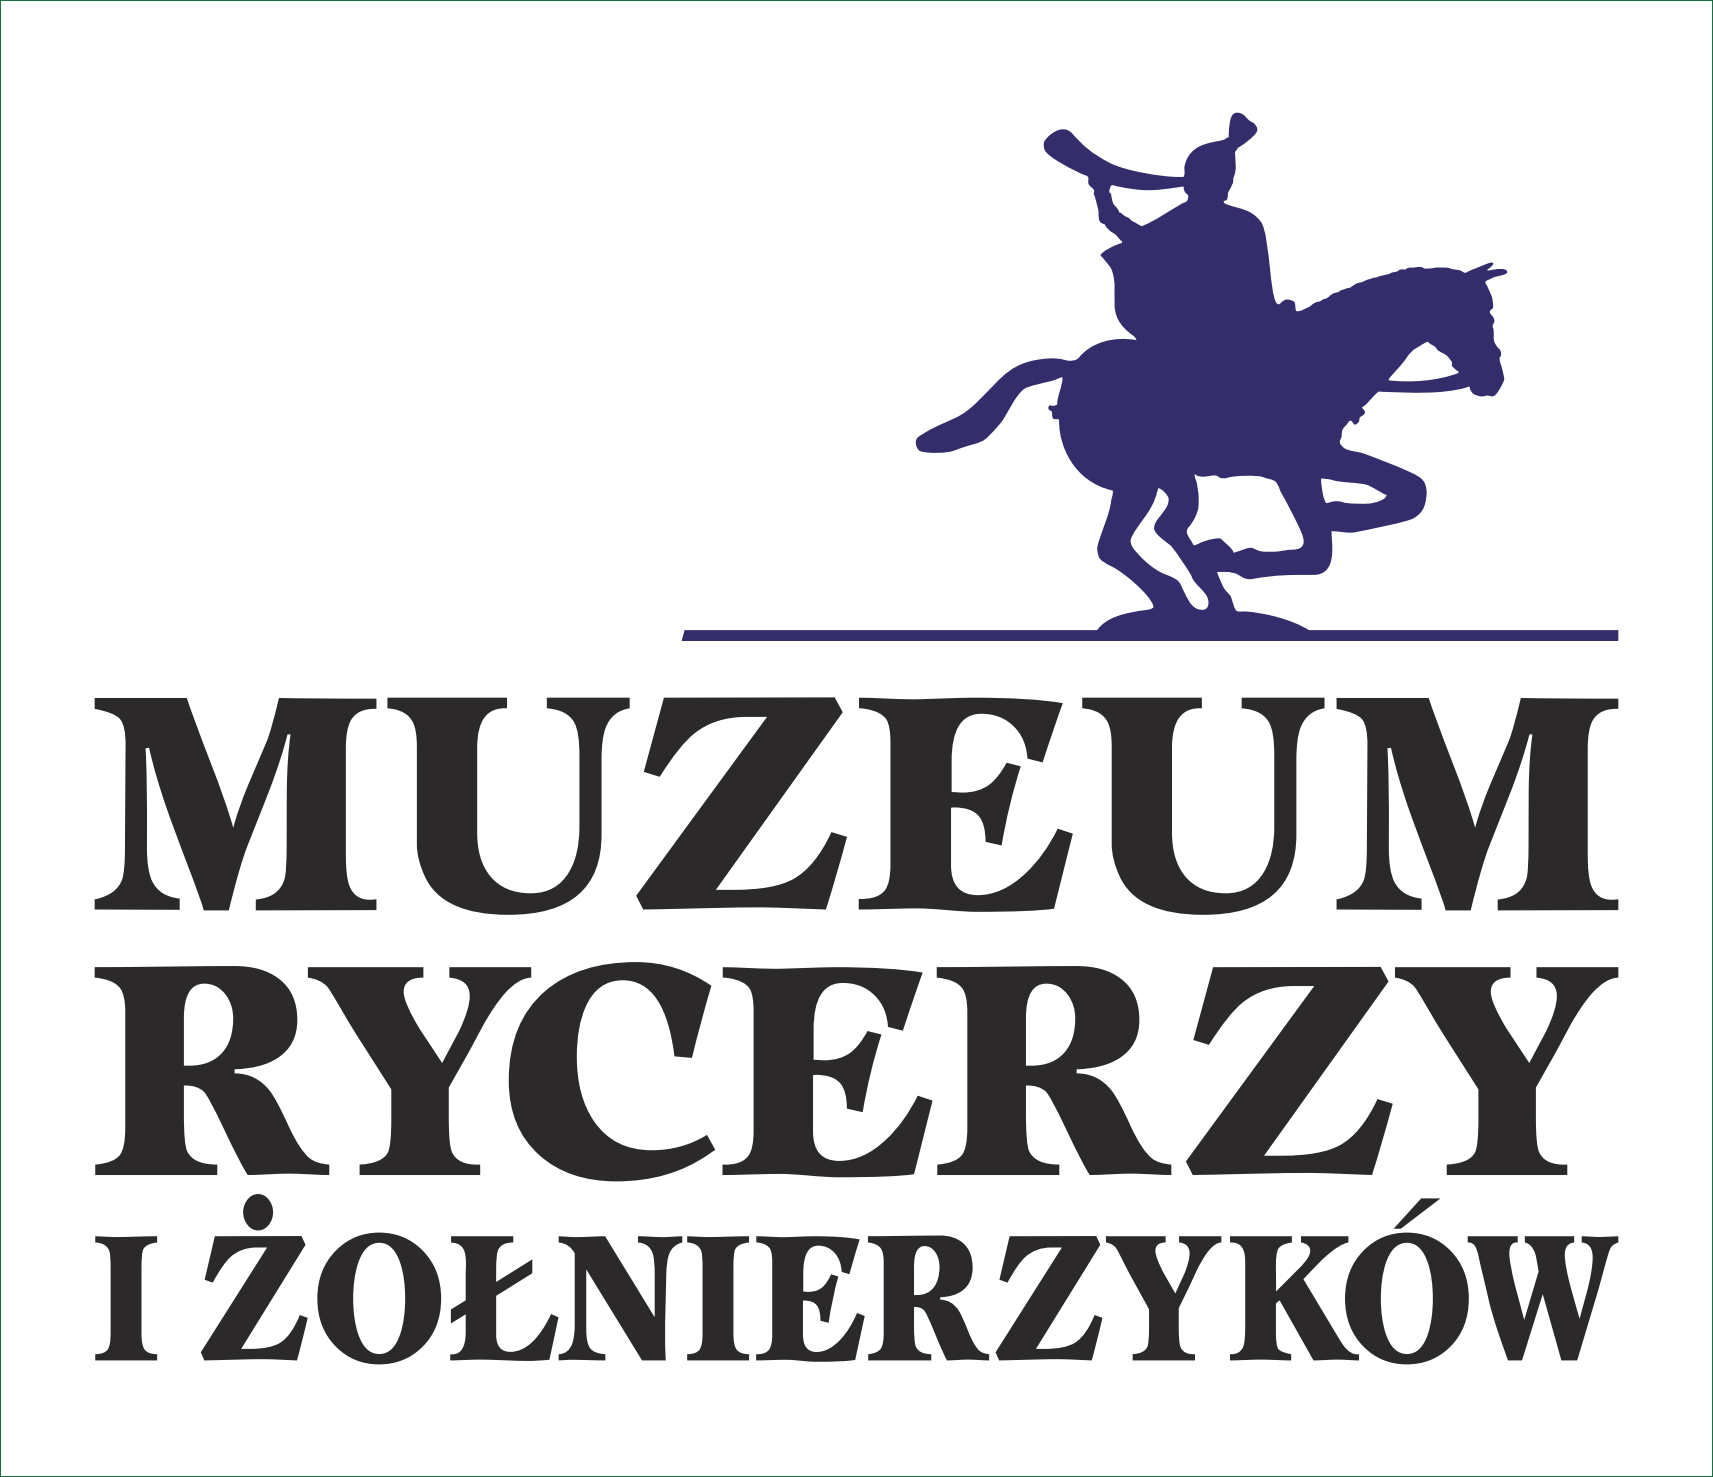 Muzeum rycerzy i żołnierzyków